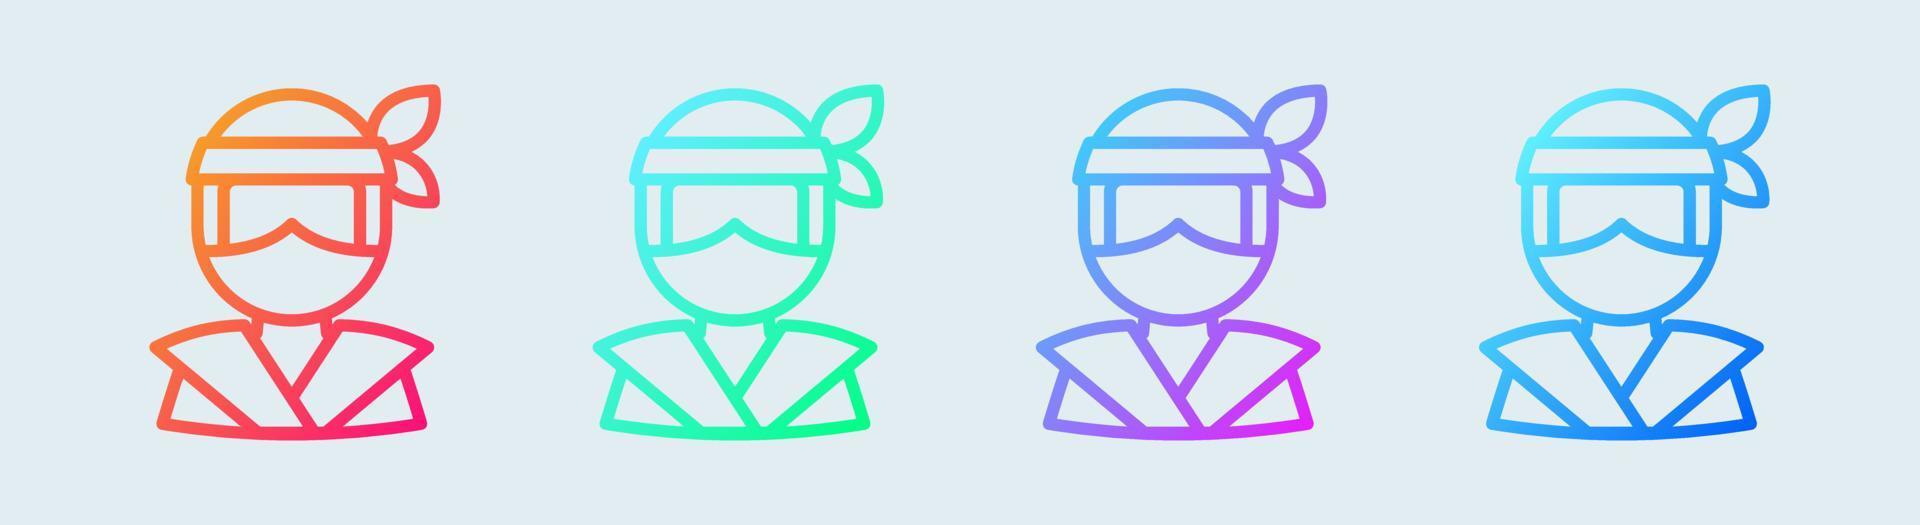 ninjalijnpictogram in gradiëntkleuren. Japanse krijger tekenen vector illustratie.